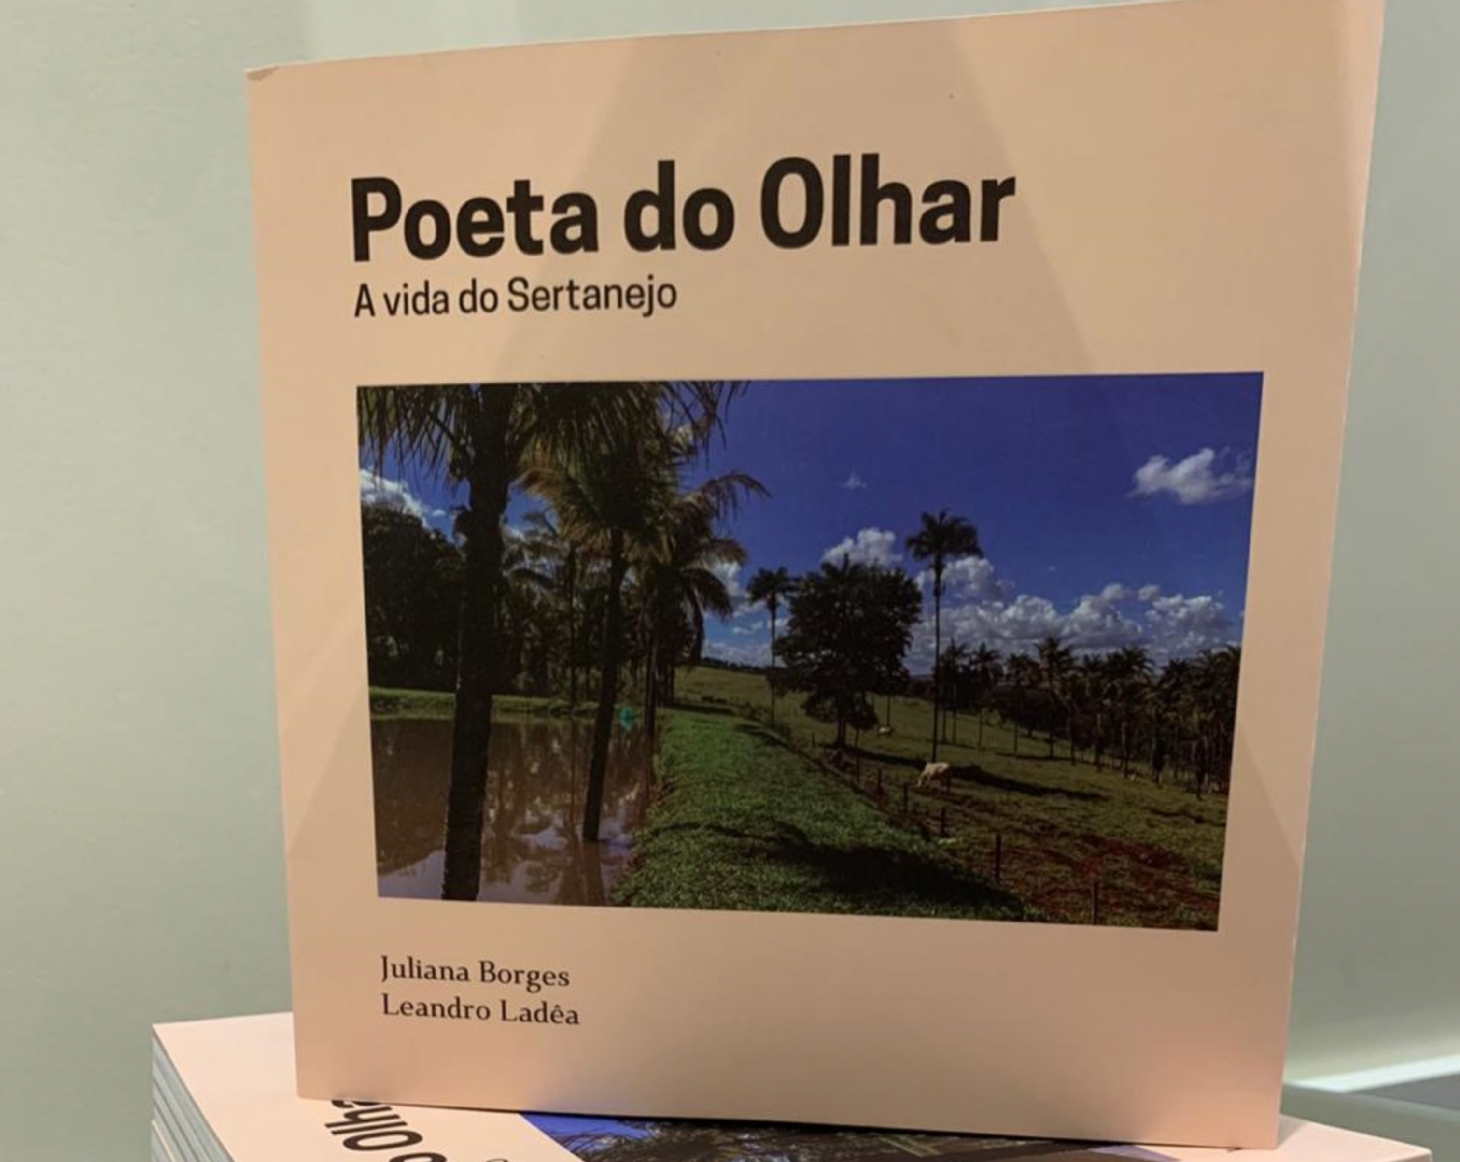 Agência de viagens lança livro de poesias e fotos artísticas sobre o interior do Brasil | Jornal da Orla